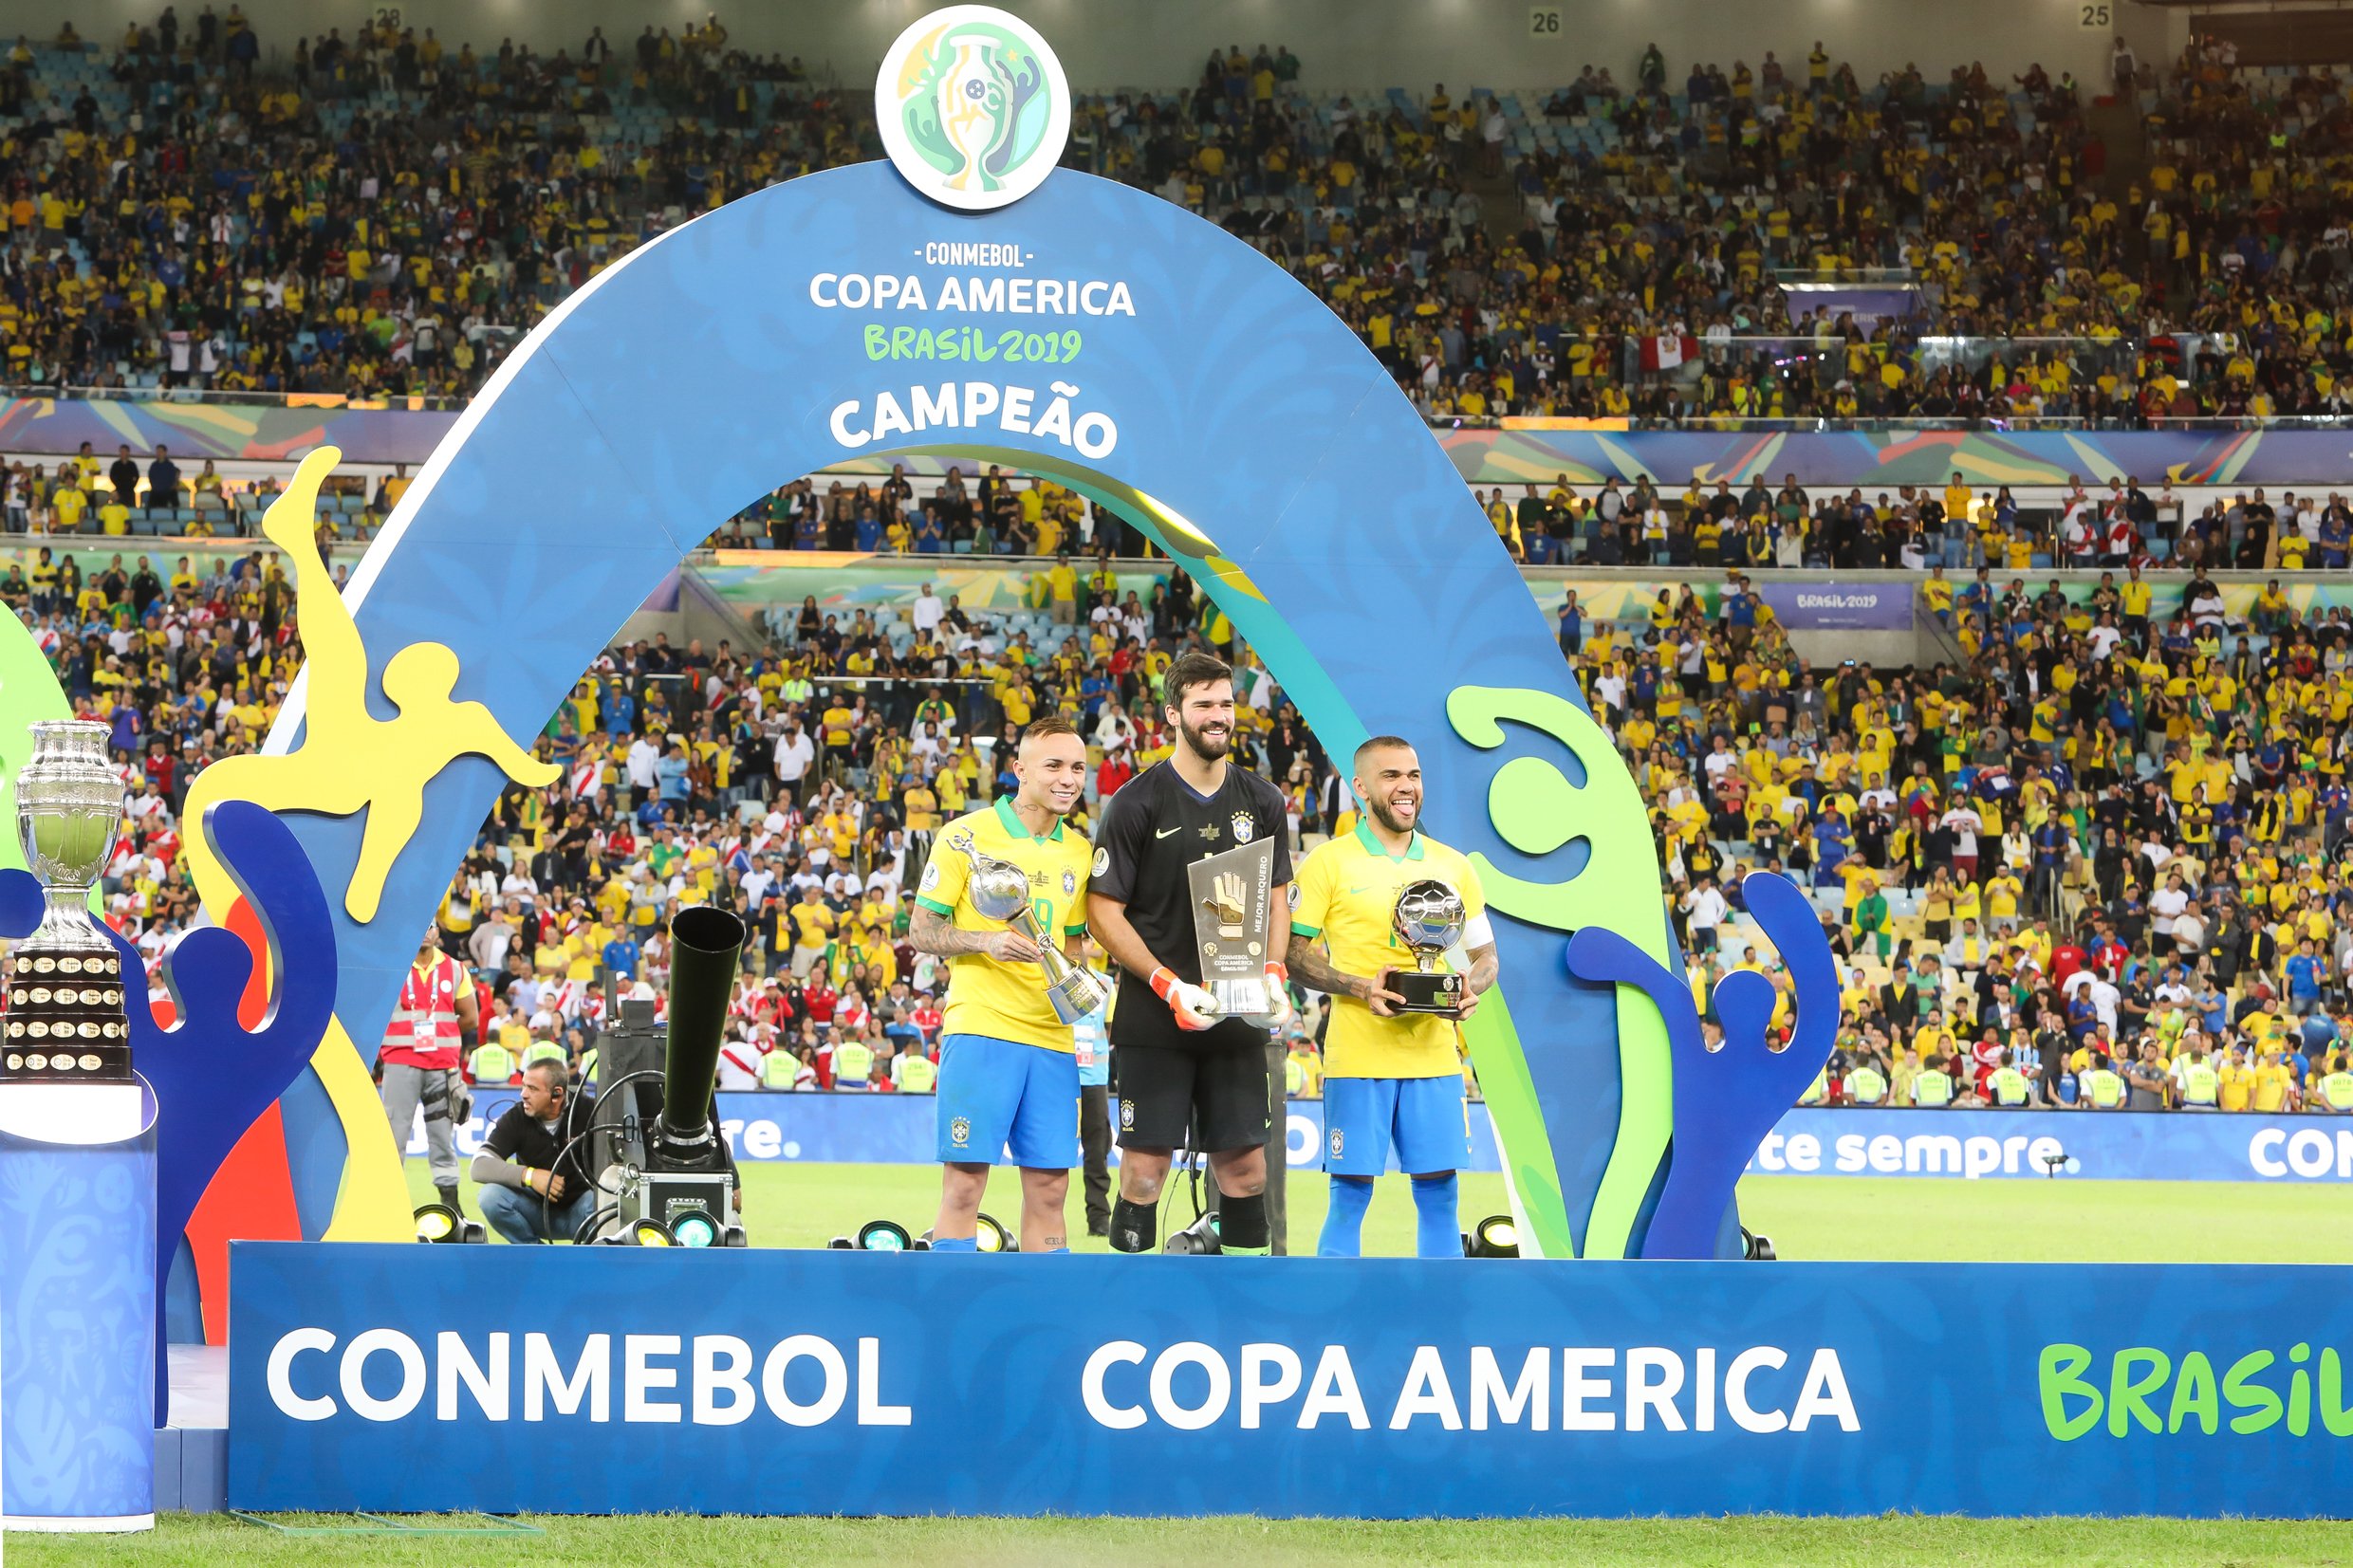 Estande da Copa América em estádio e jogadores segurando troféus